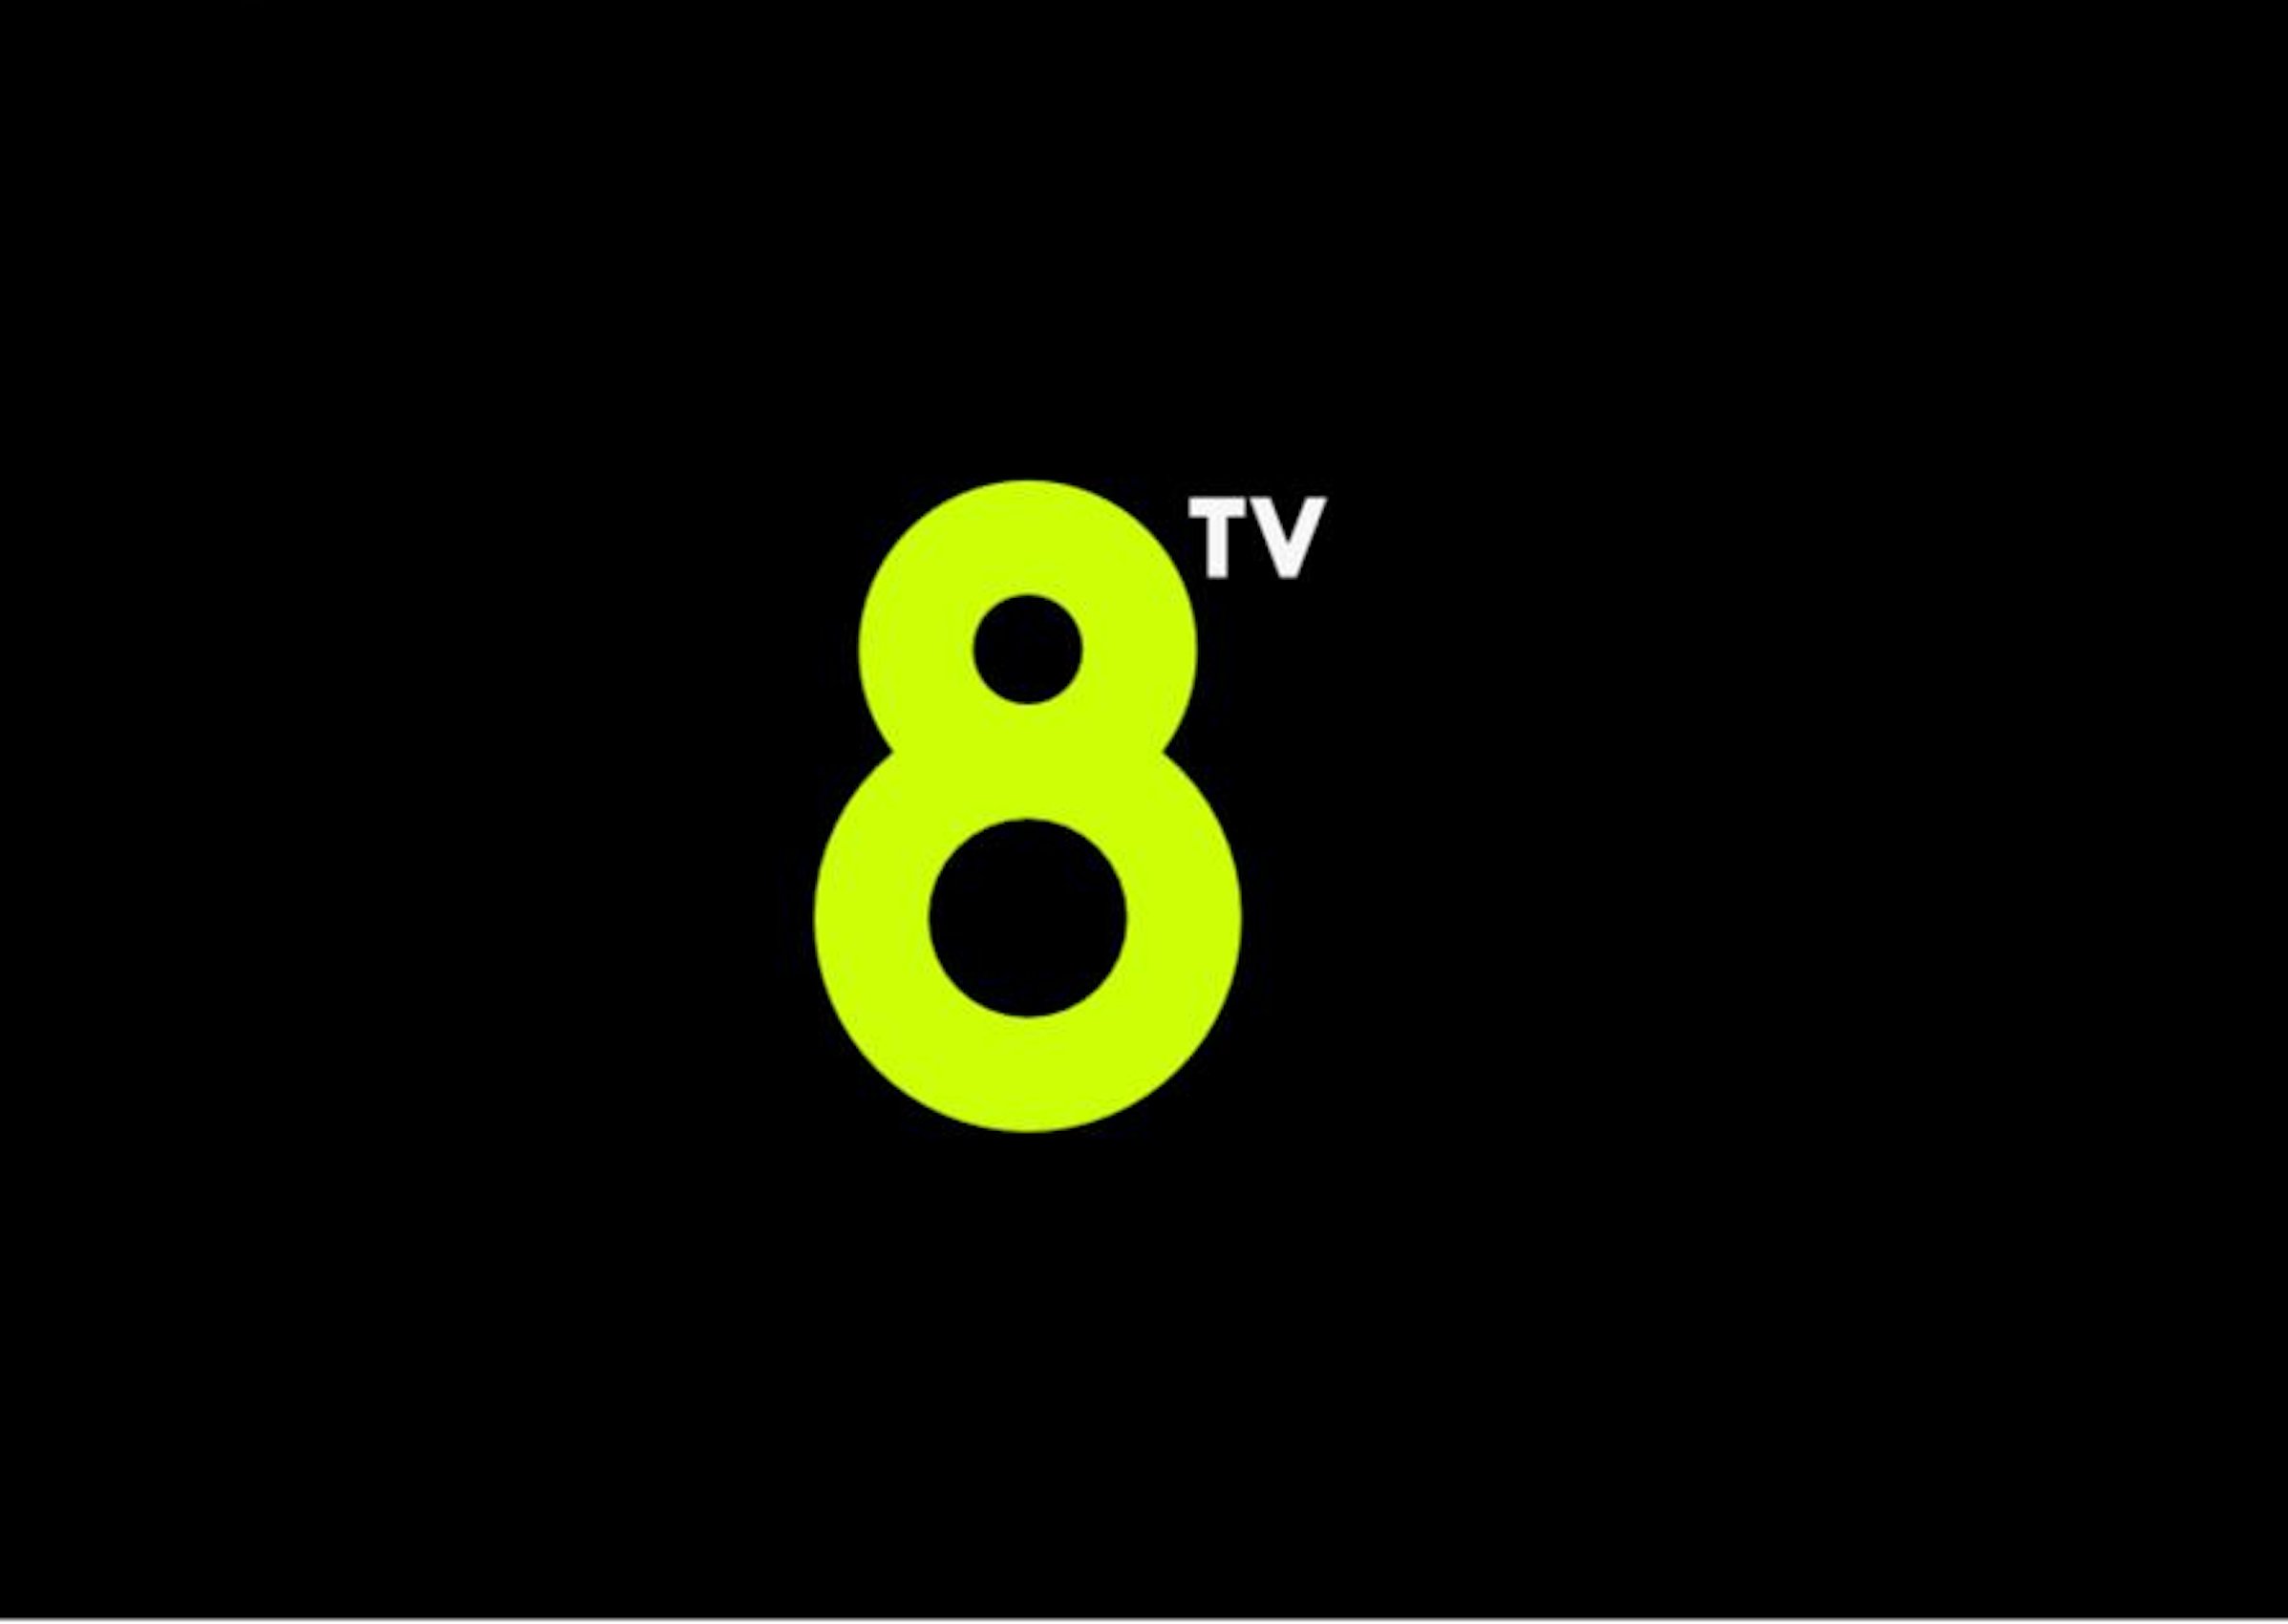 EL CAC autoritza la venda: la nova 8tv té llum verda